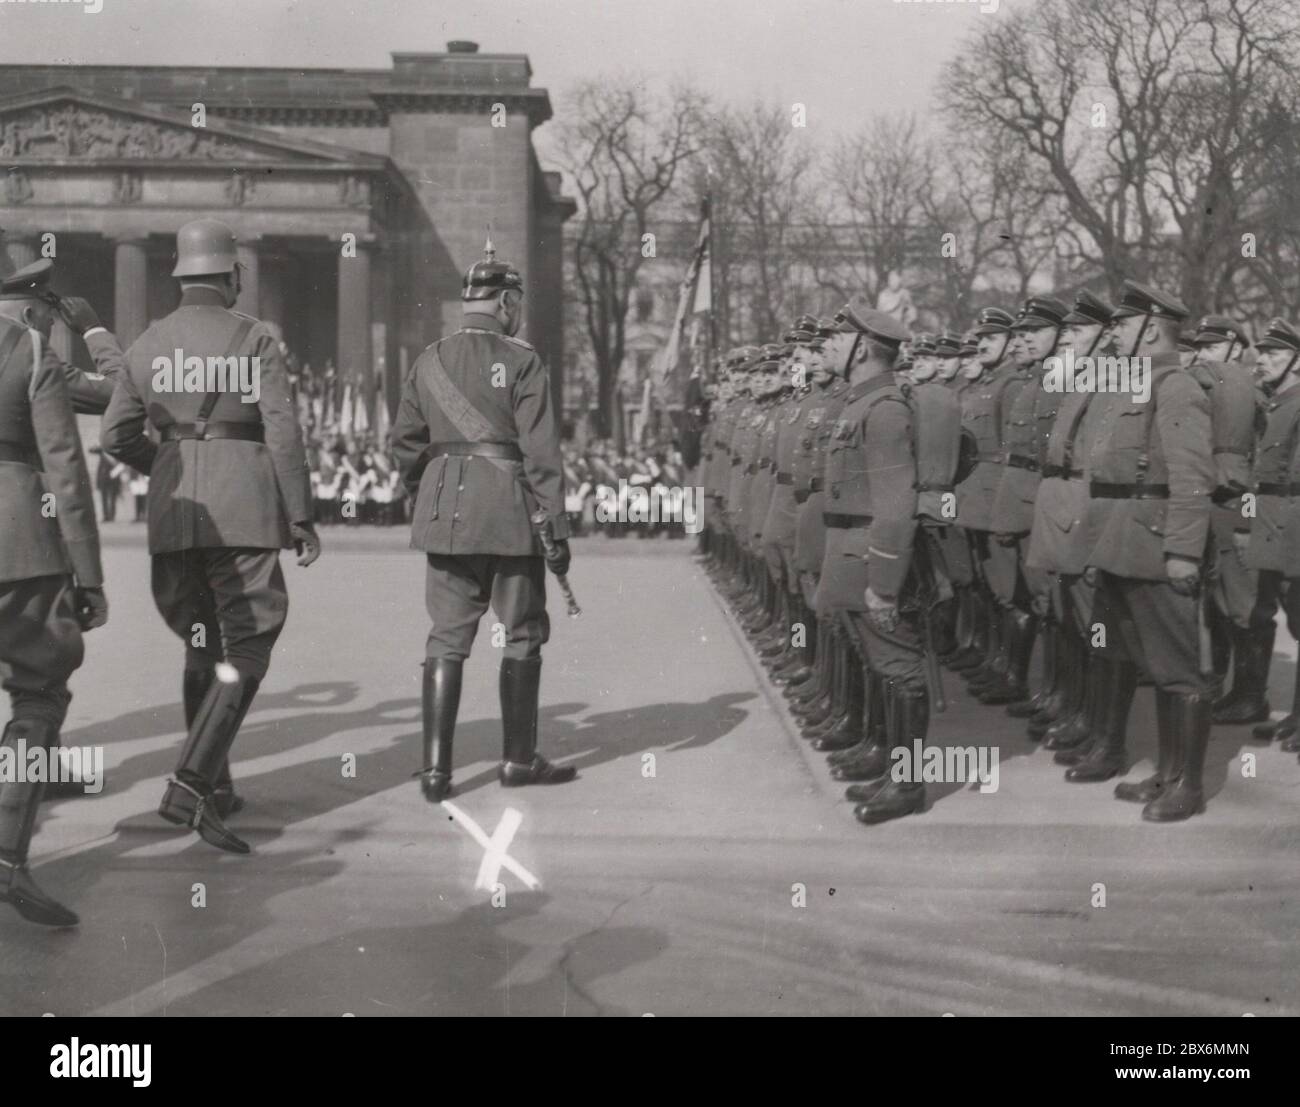 Staatsgesetz; der Reichspräsident von Hindenburg geht an der Front. Heinrich Hoffmann fotografiert 1933 Adolf Hitlers offizieller Fotograf und Nazi-Politiker und Verleger, der Mitglied des intime Kreises Hitlers war. Stockfoto